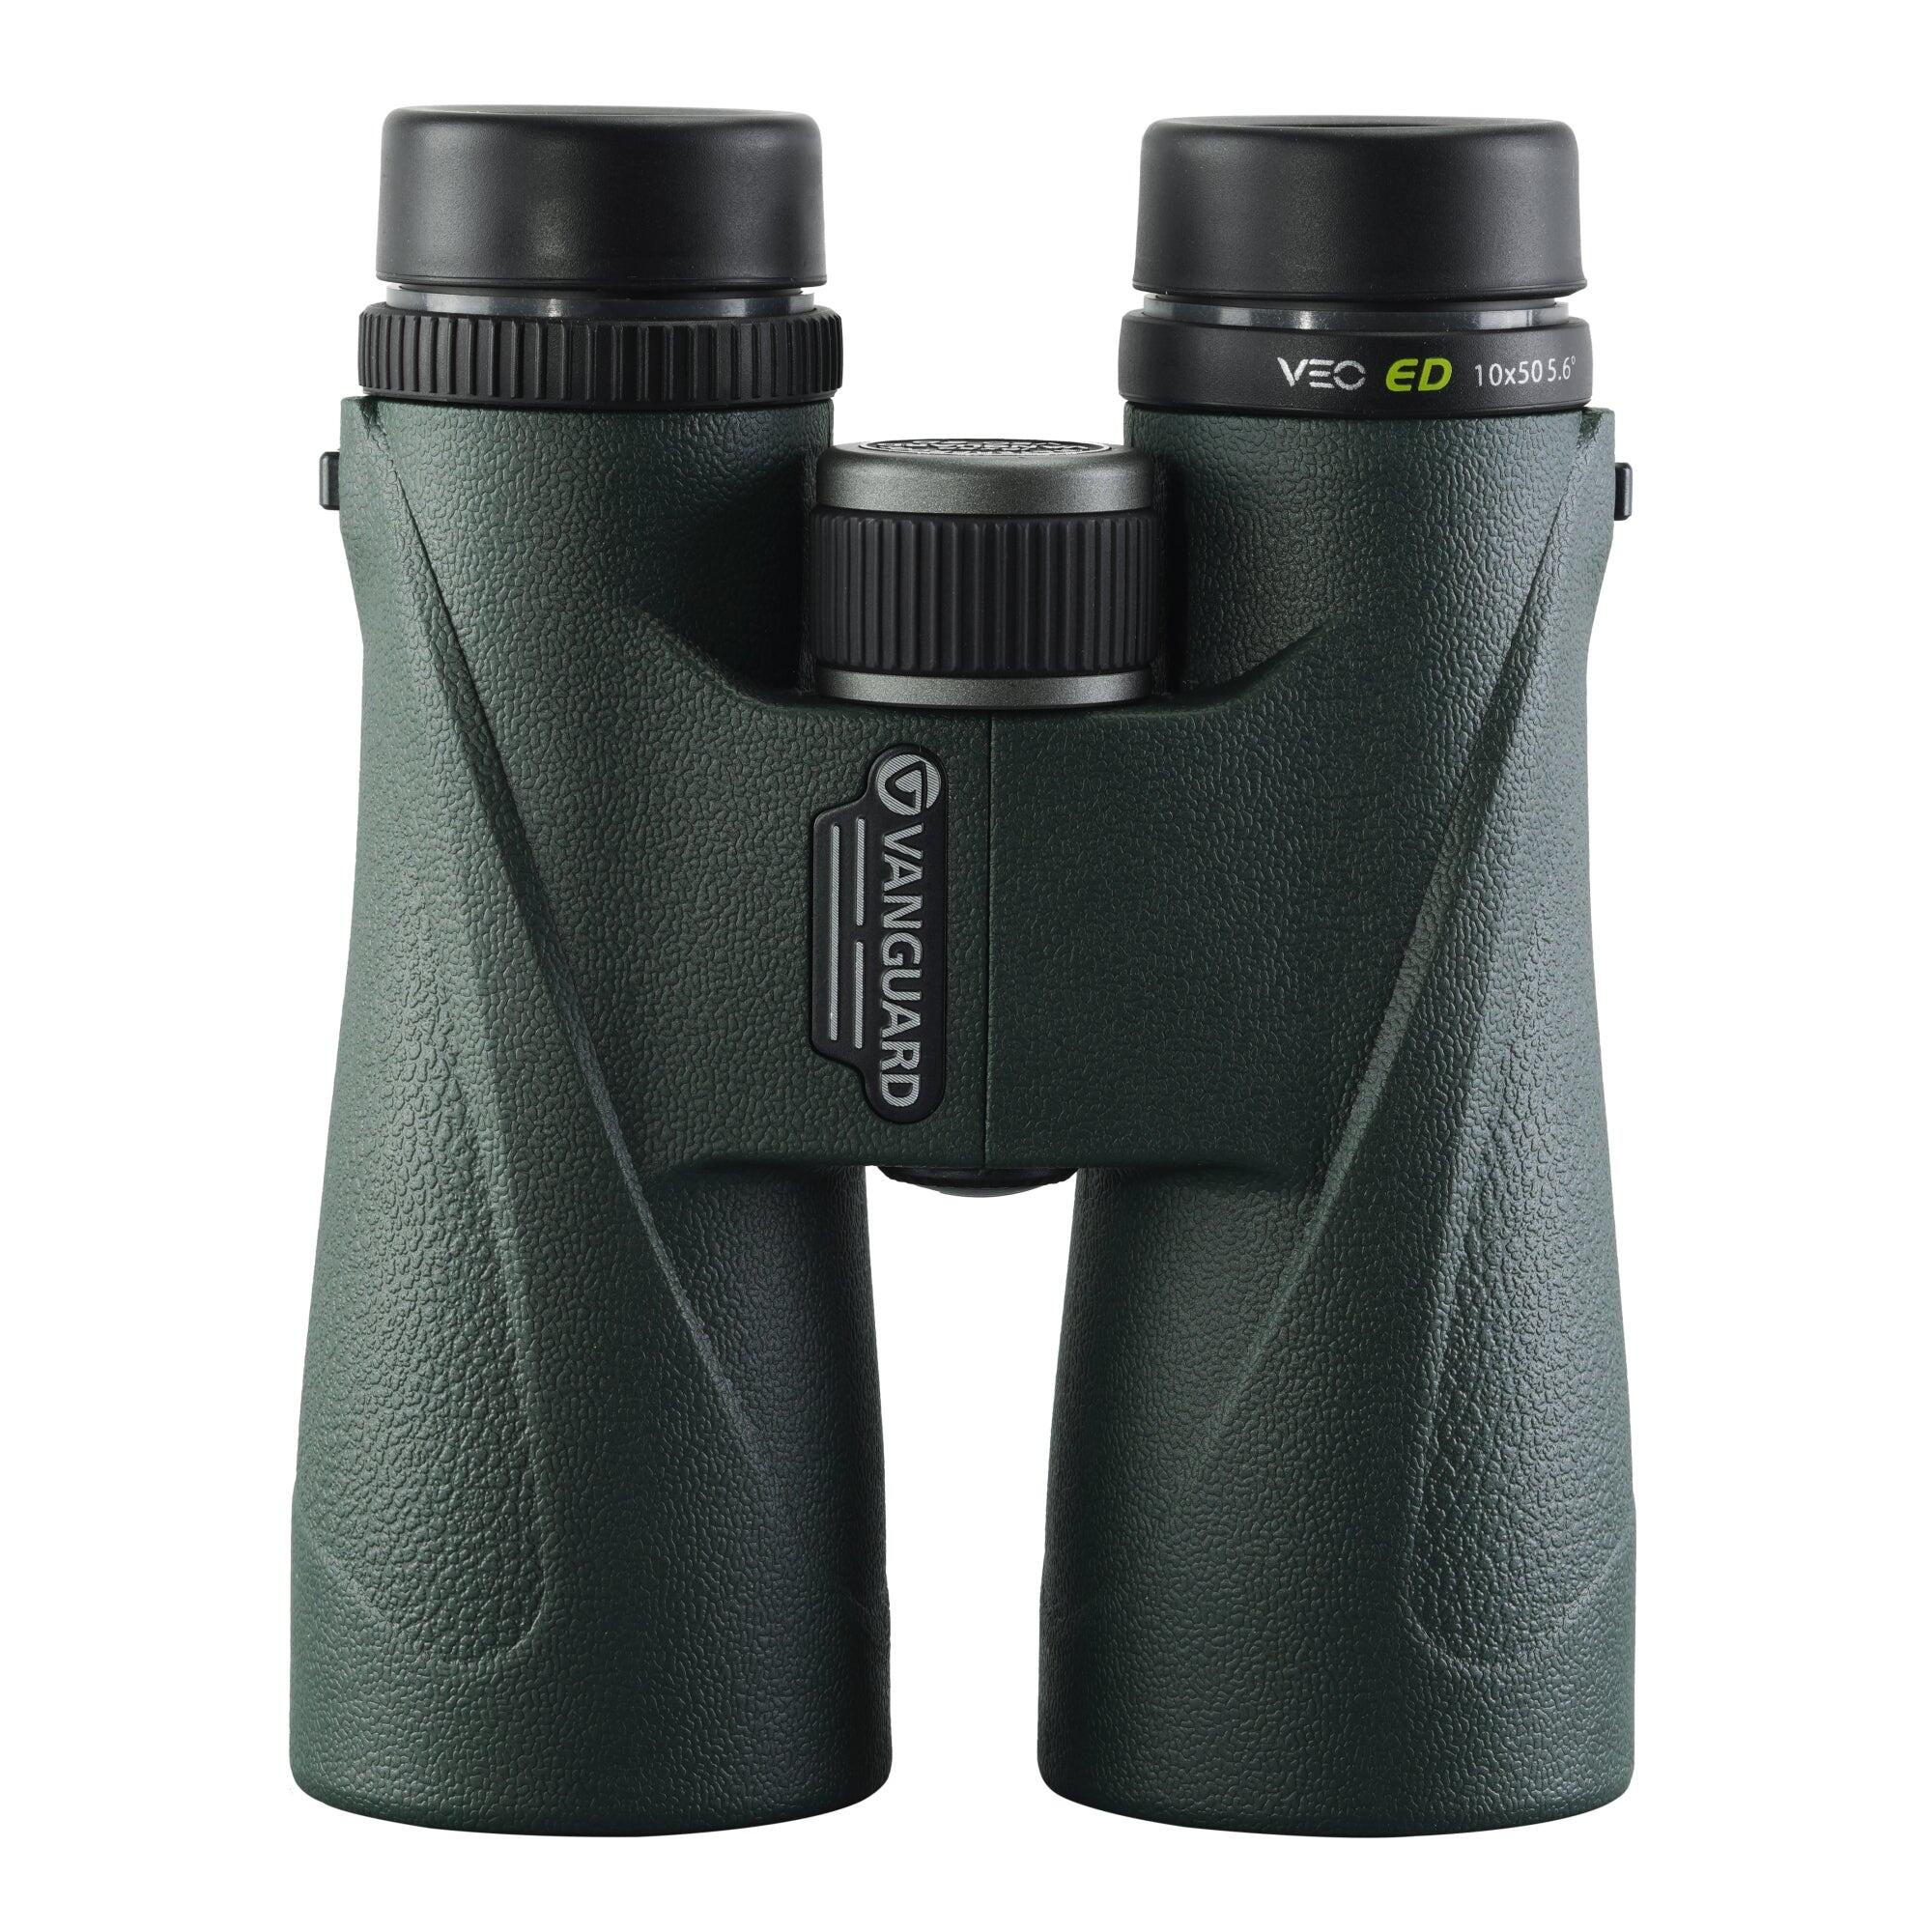 VEO ED 10x50 Carbon Composite Binoculars 1/5